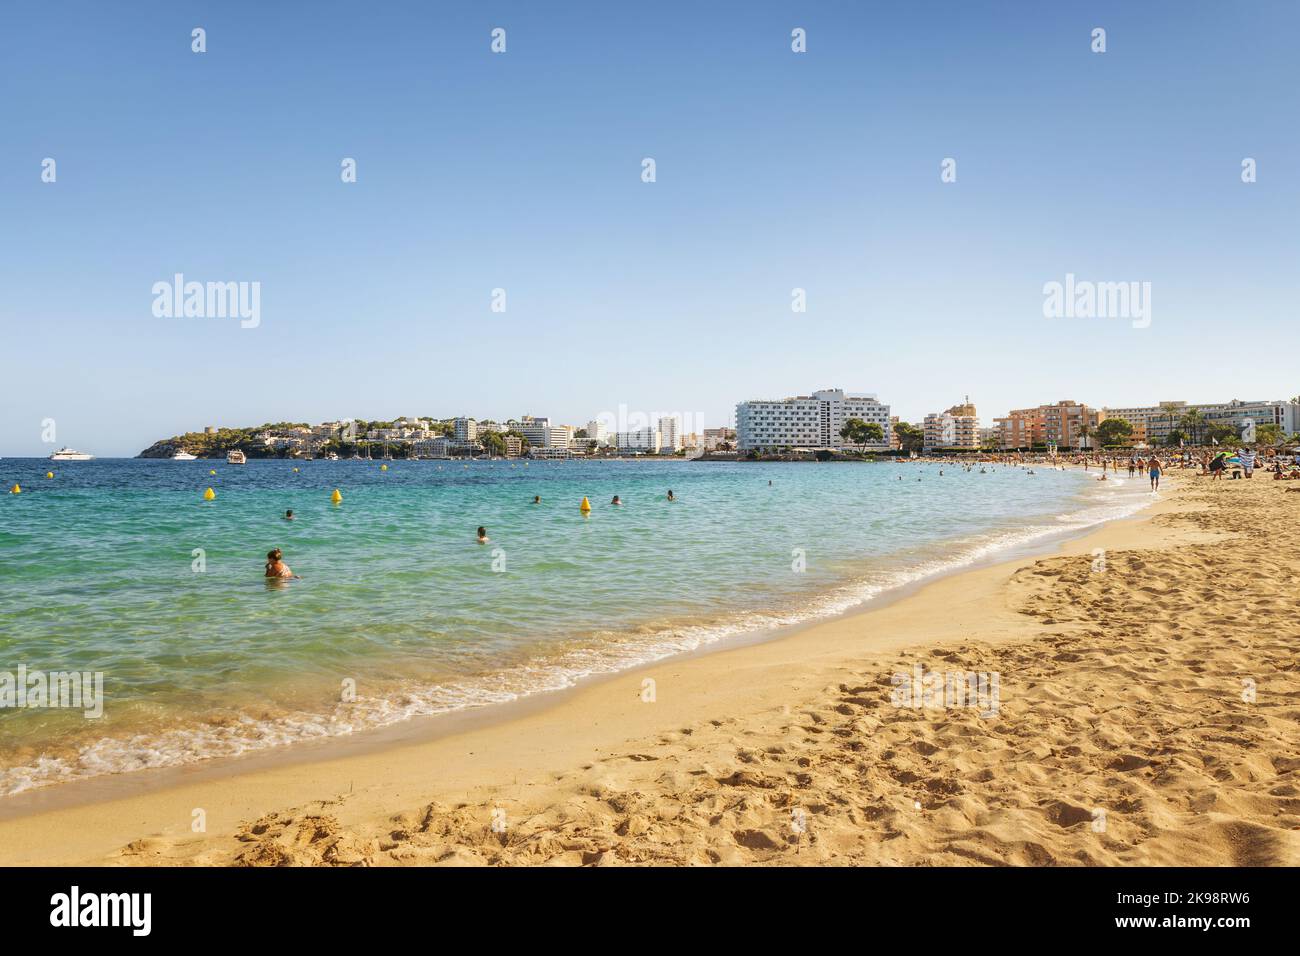 Journée ensoleillée sur la plage de Magaluf, île de Majorque, Espagne Banque D'Images